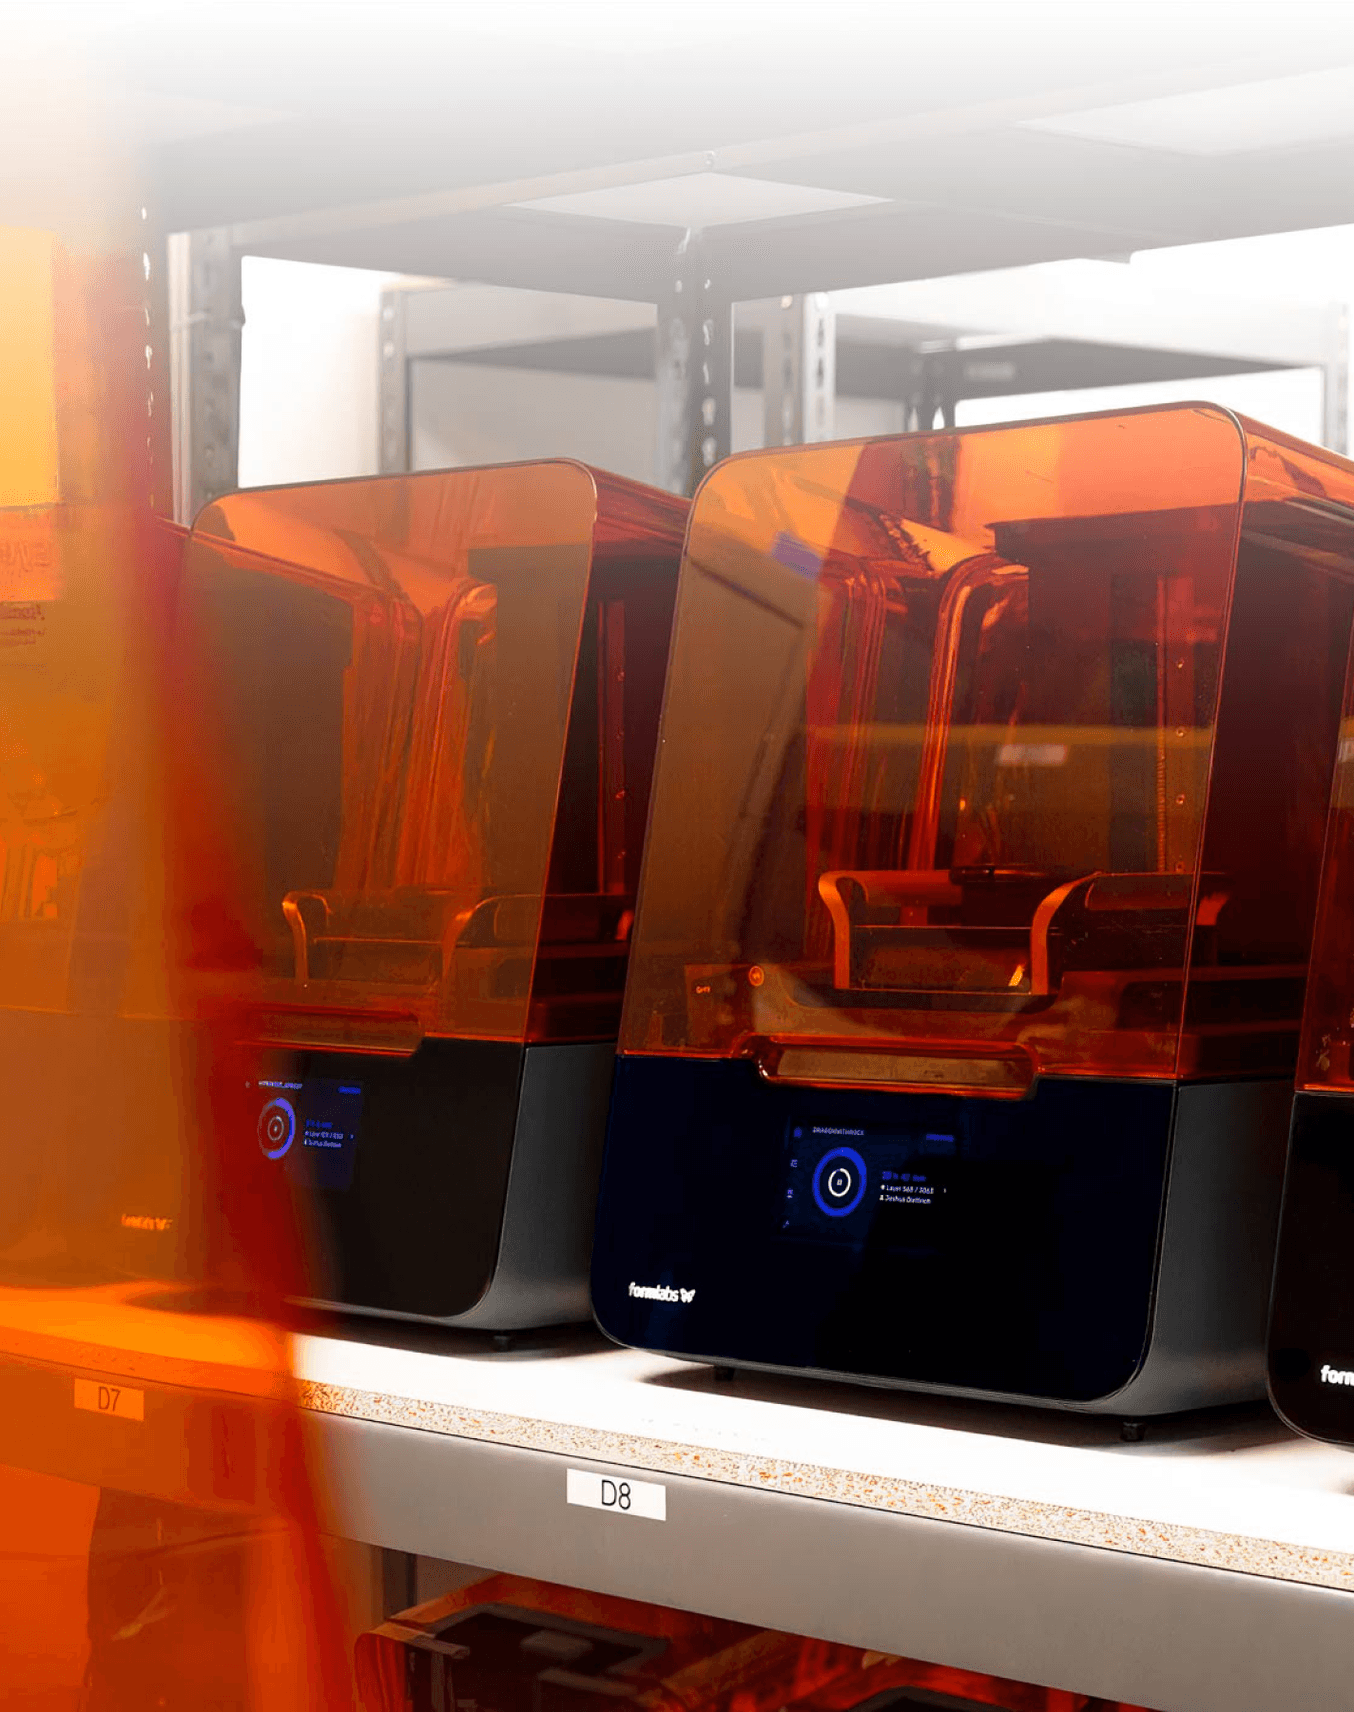 Formlabs fleet of 3D printers